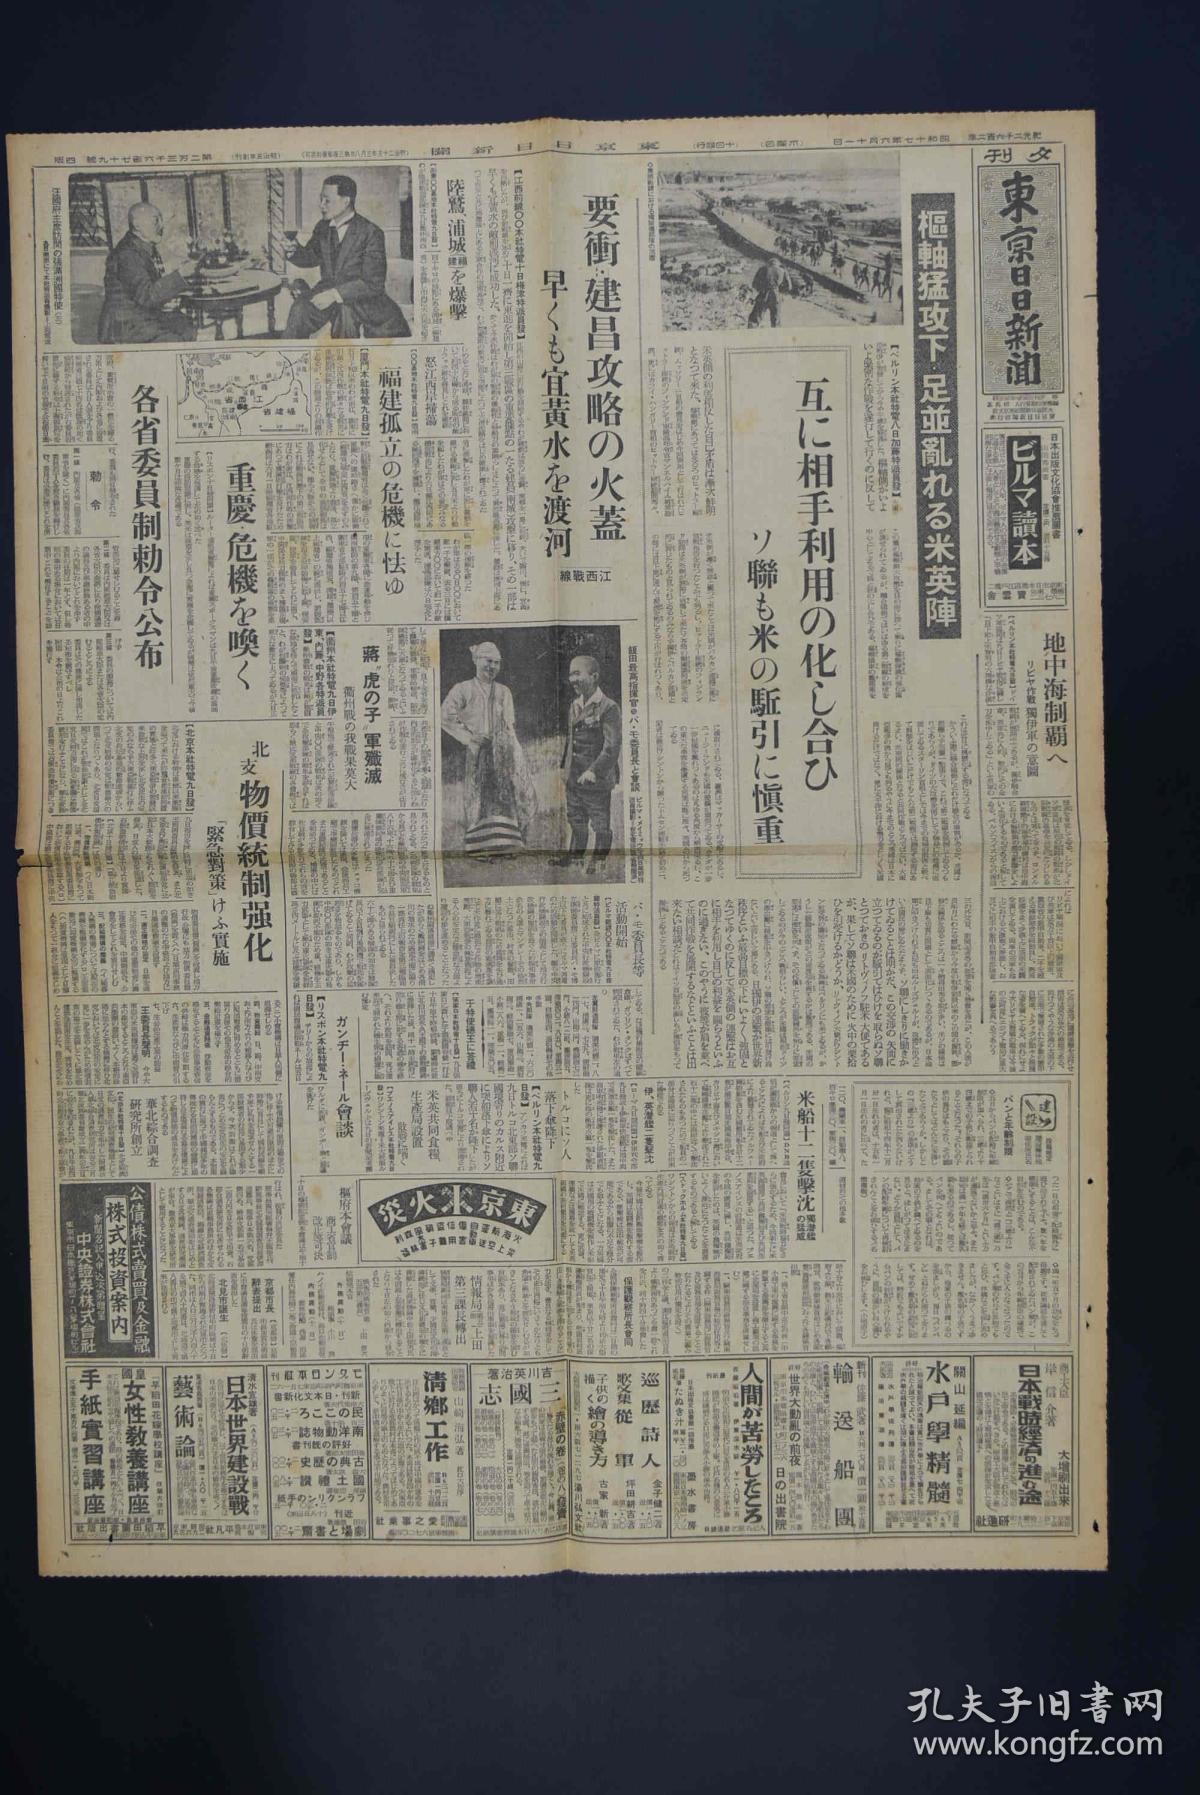 侵华史料《东京日日新闻》夕刊报纸1张 1942